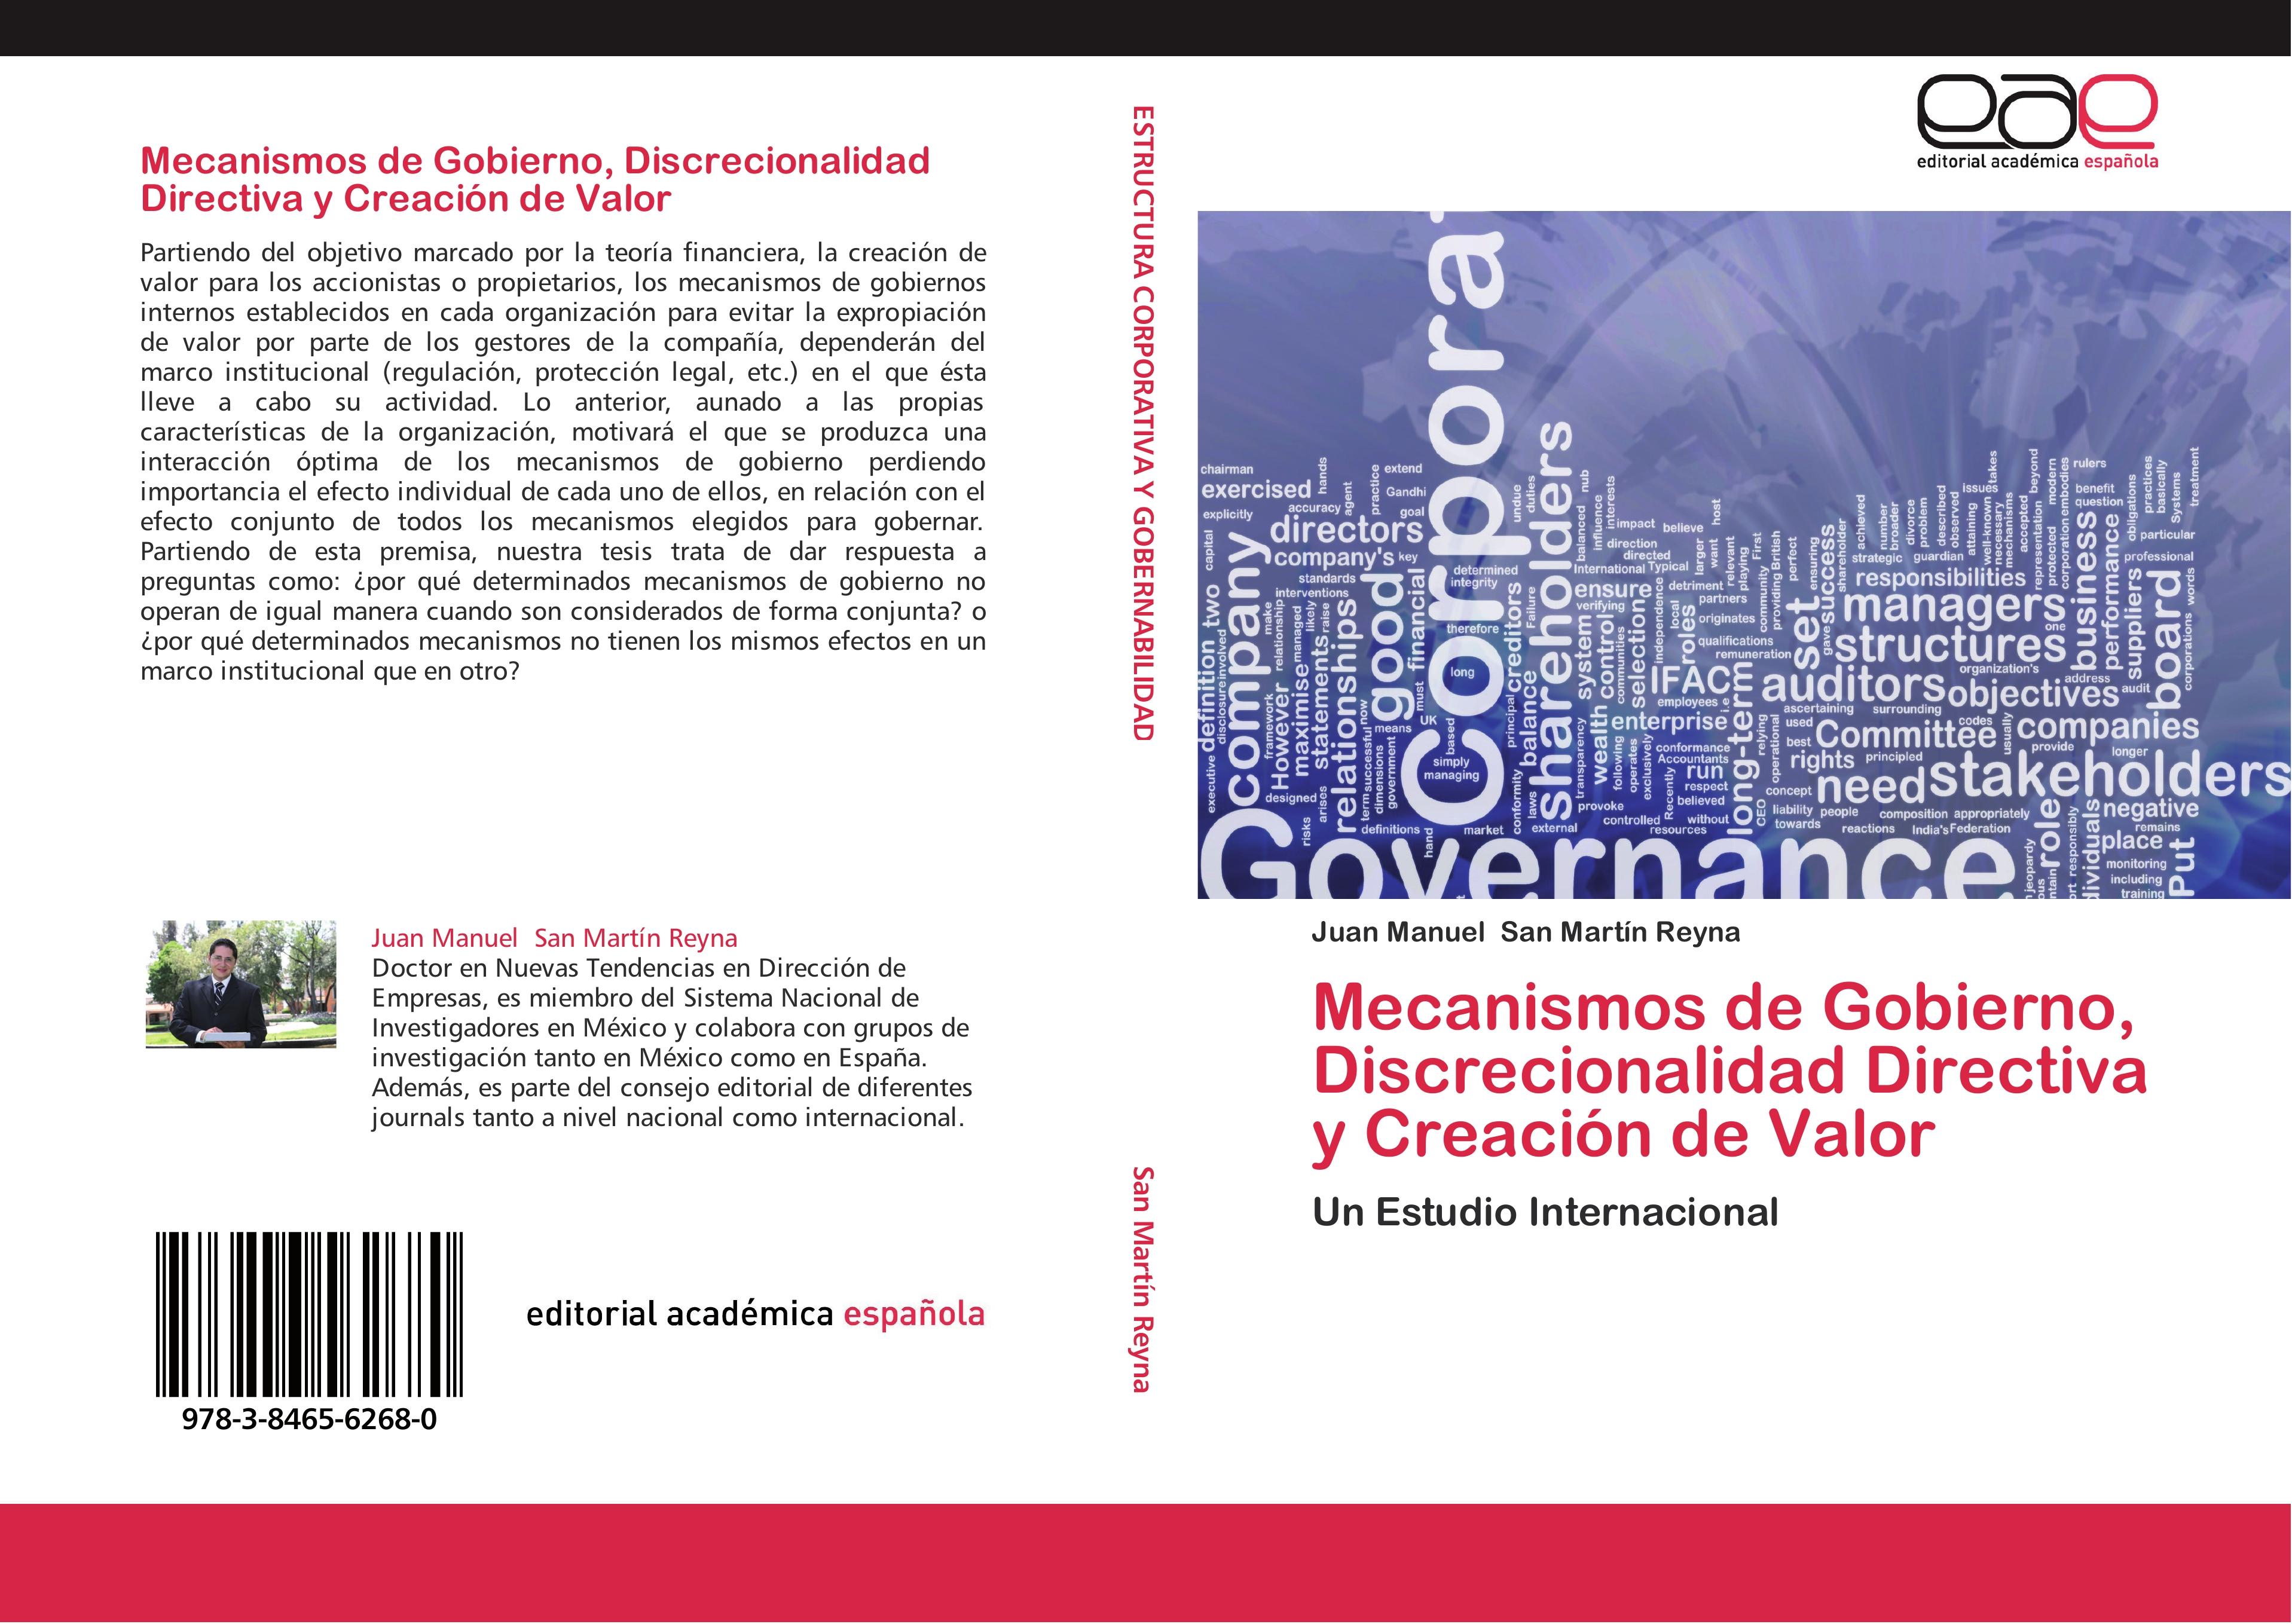 Mecanismos de Gobierno, Discrecionalidad Directiva y Creación de Valor - Juan Manuel San Martín Reyna